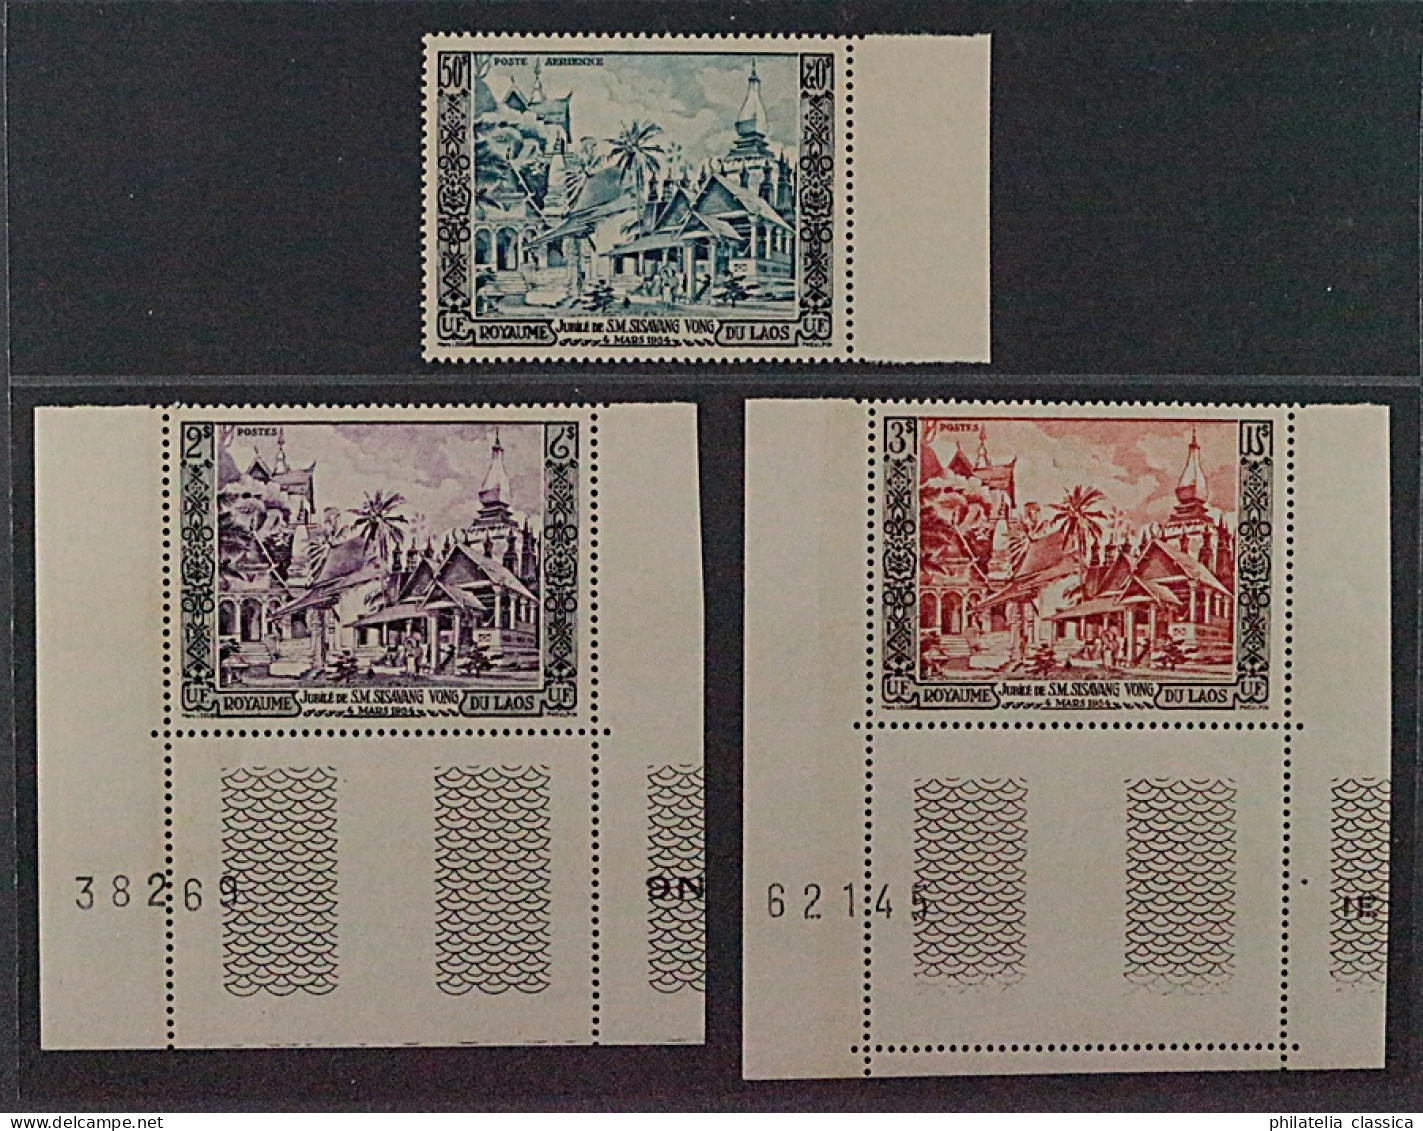 1954, LAOS 40-42 ** König Sisavang 2-50 P. Komplett, Postfrisch, 300,-€ - Laos